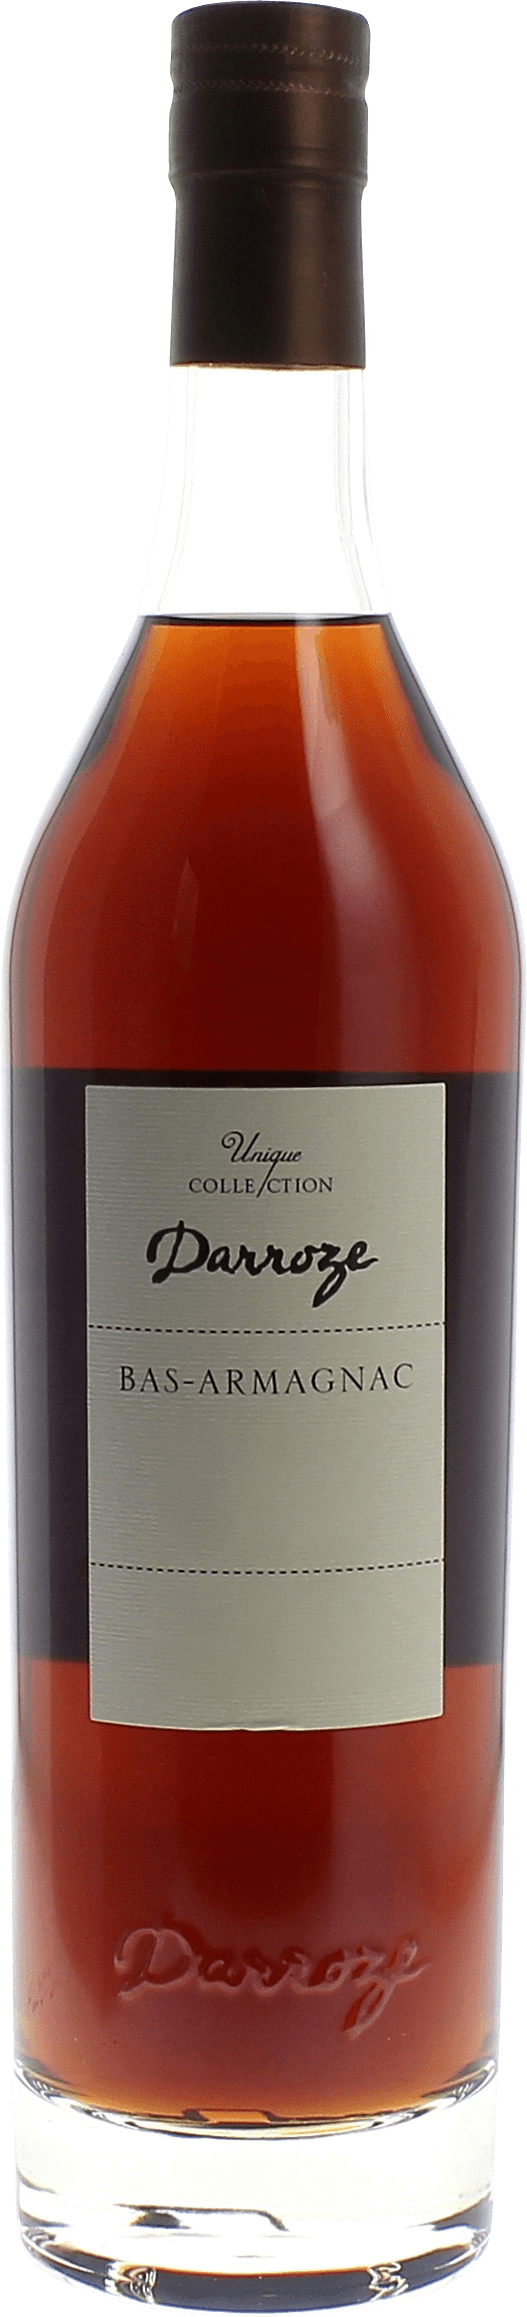 Domaine de salie 48,5 1995  Bas Armagnac, DARROZE  Francis Bas Armagnac